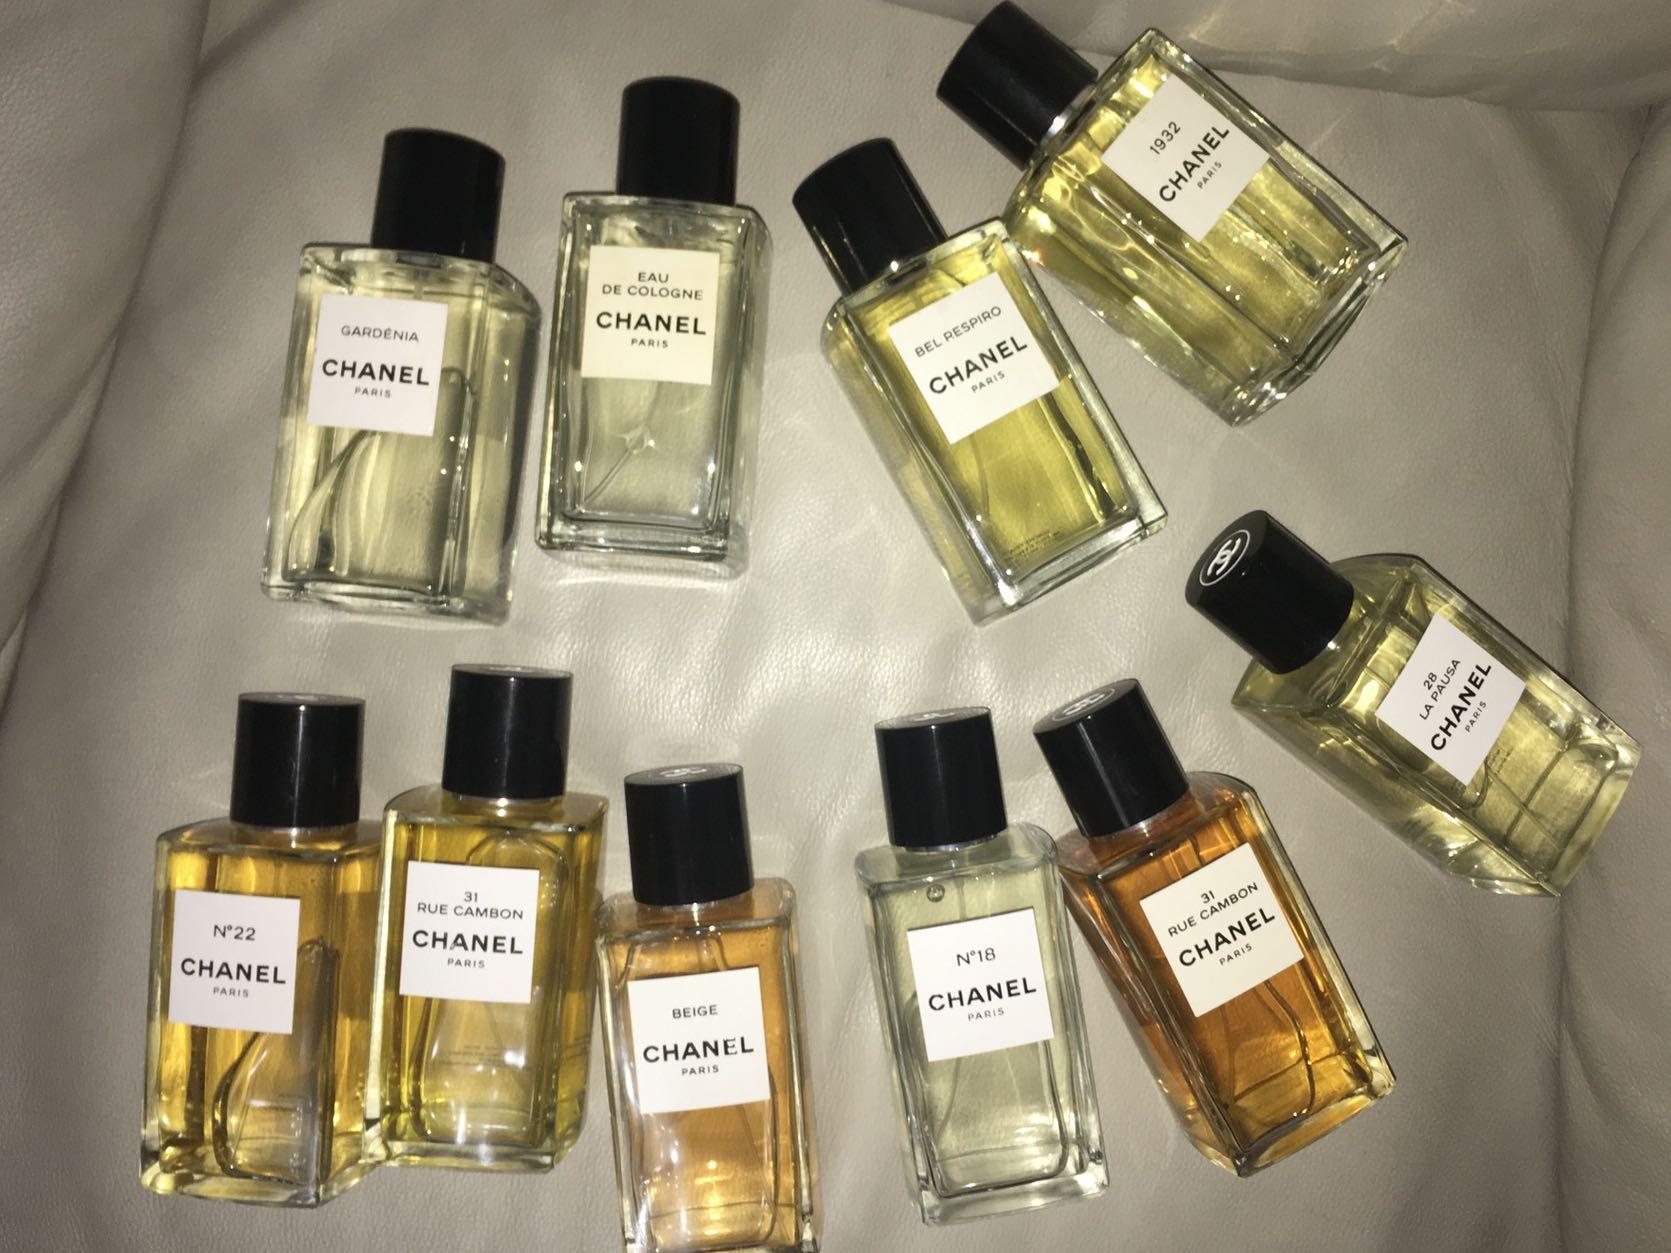 Chanel Coromandel Les Exclusifs Eau de Parfum Vial Spray 0.05 oz / 1.5ml Sample!